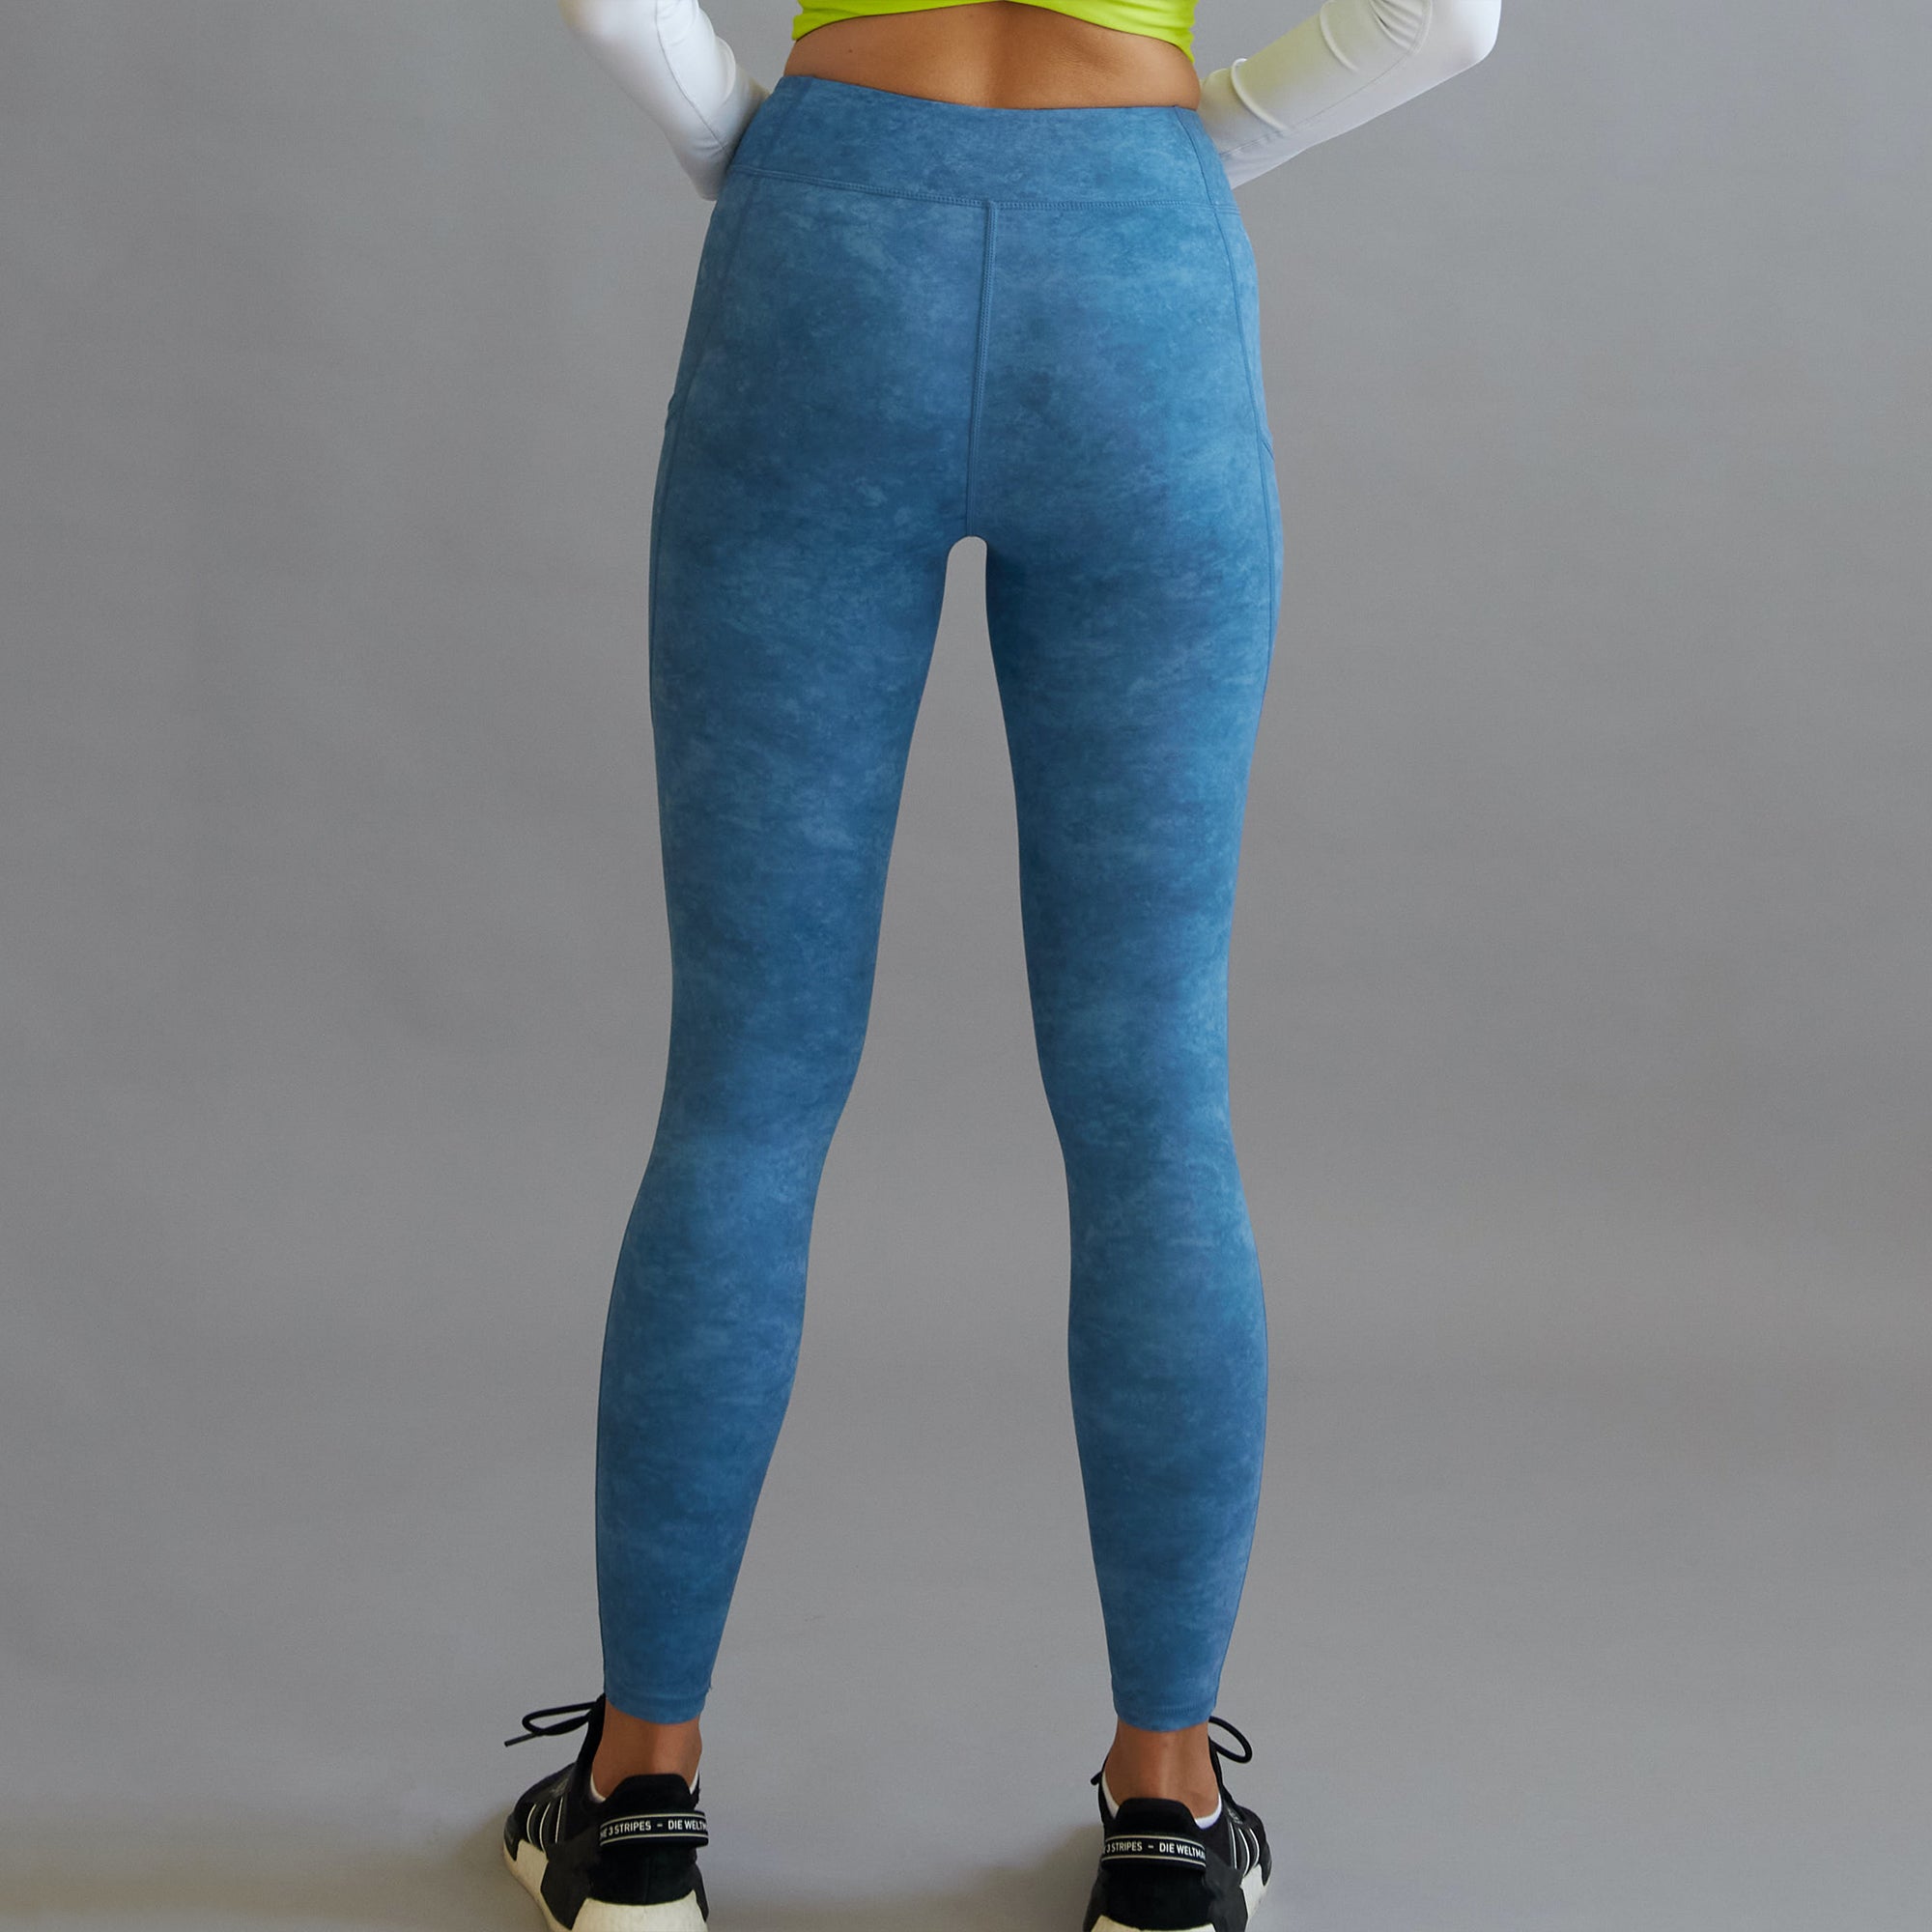 gym leggings for women